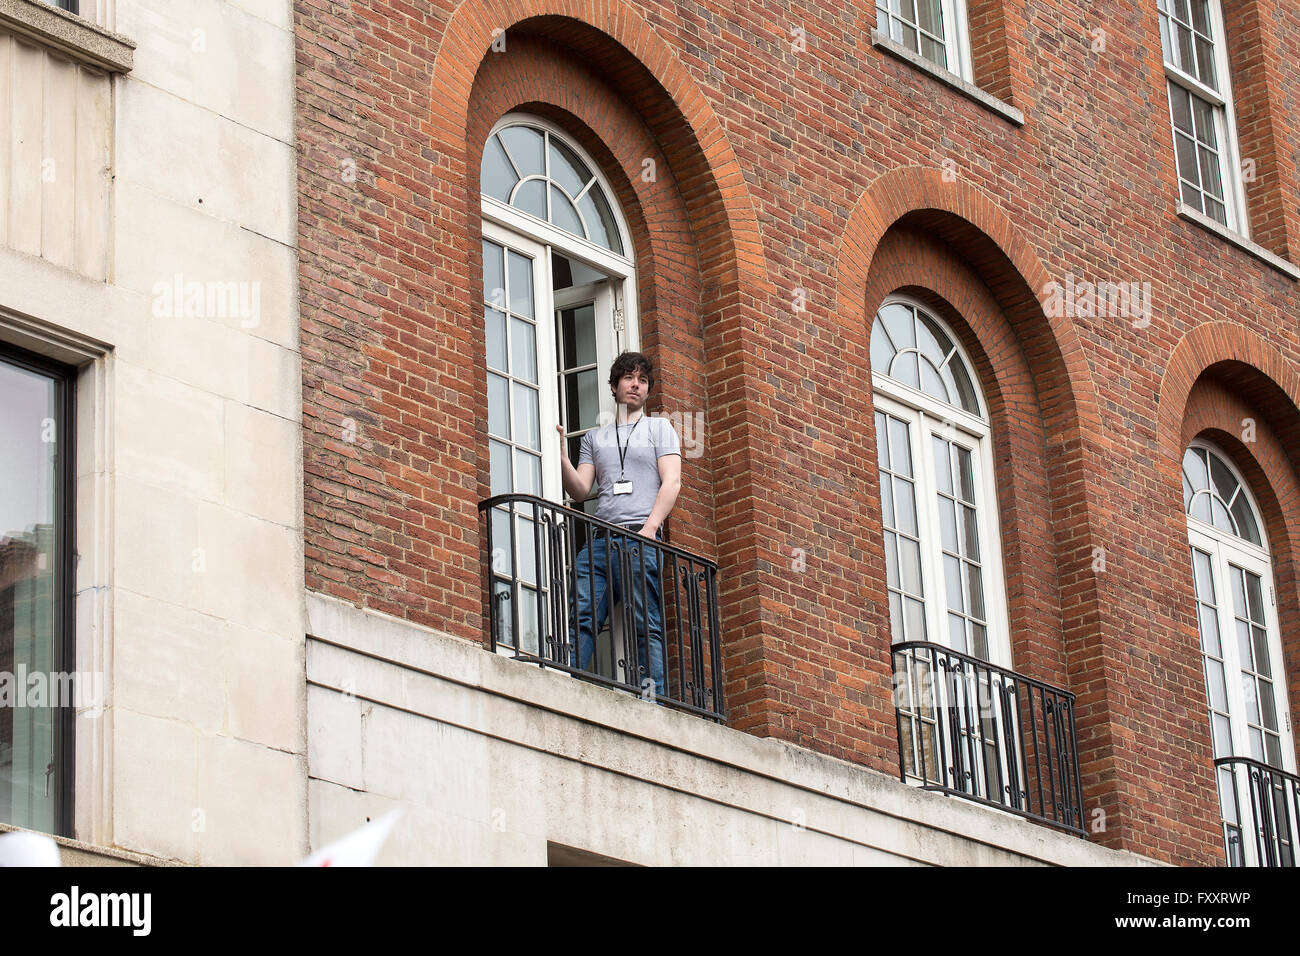 Anti-Austerity Mars. Un jeune homme regarde de son appartement comme l'anti-austérité passe par Mars. Banque D'Images